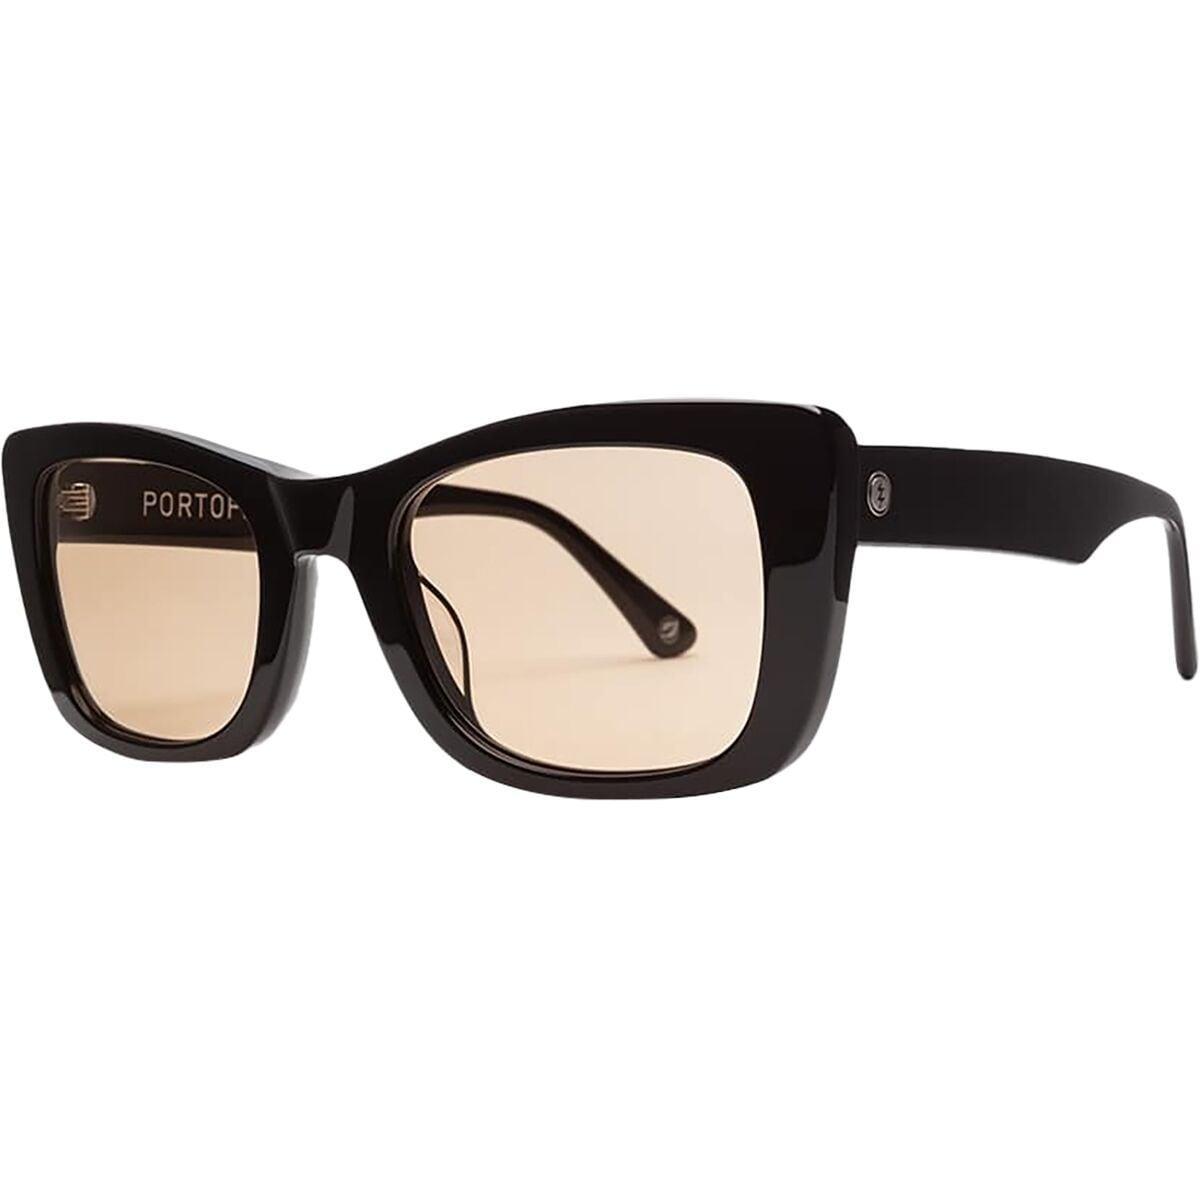 Electric Portofino 52mm Gradient Rectangular Sunglasses Product Image